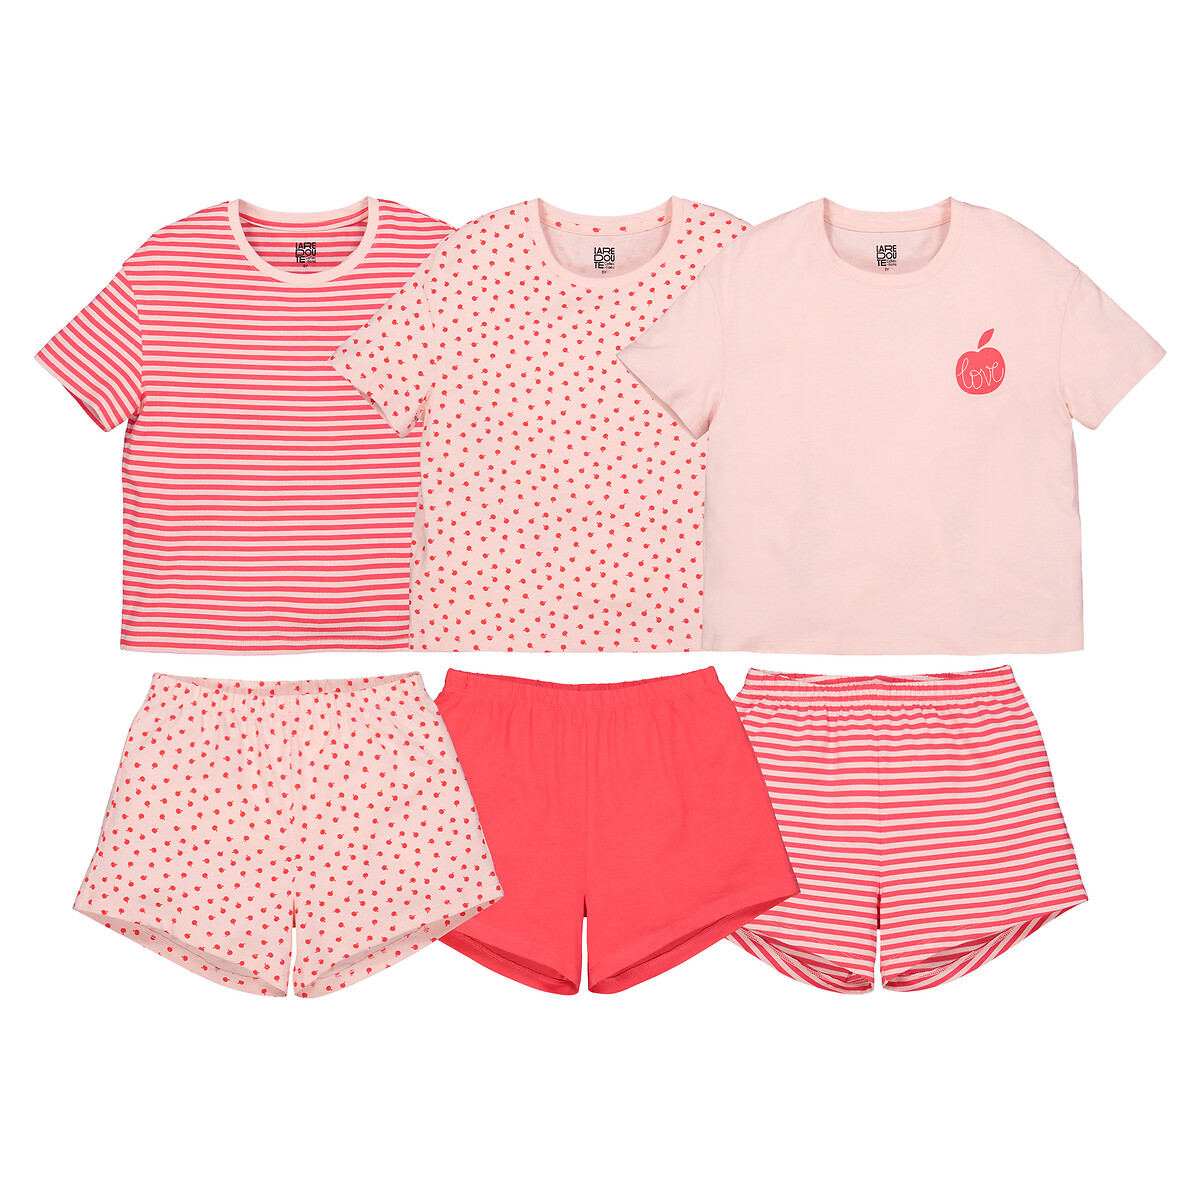 Комплект из трех пижам La Redoute 4 года - 102 см розовый комплект из трех пижам la redoute 3 года 94 см синий